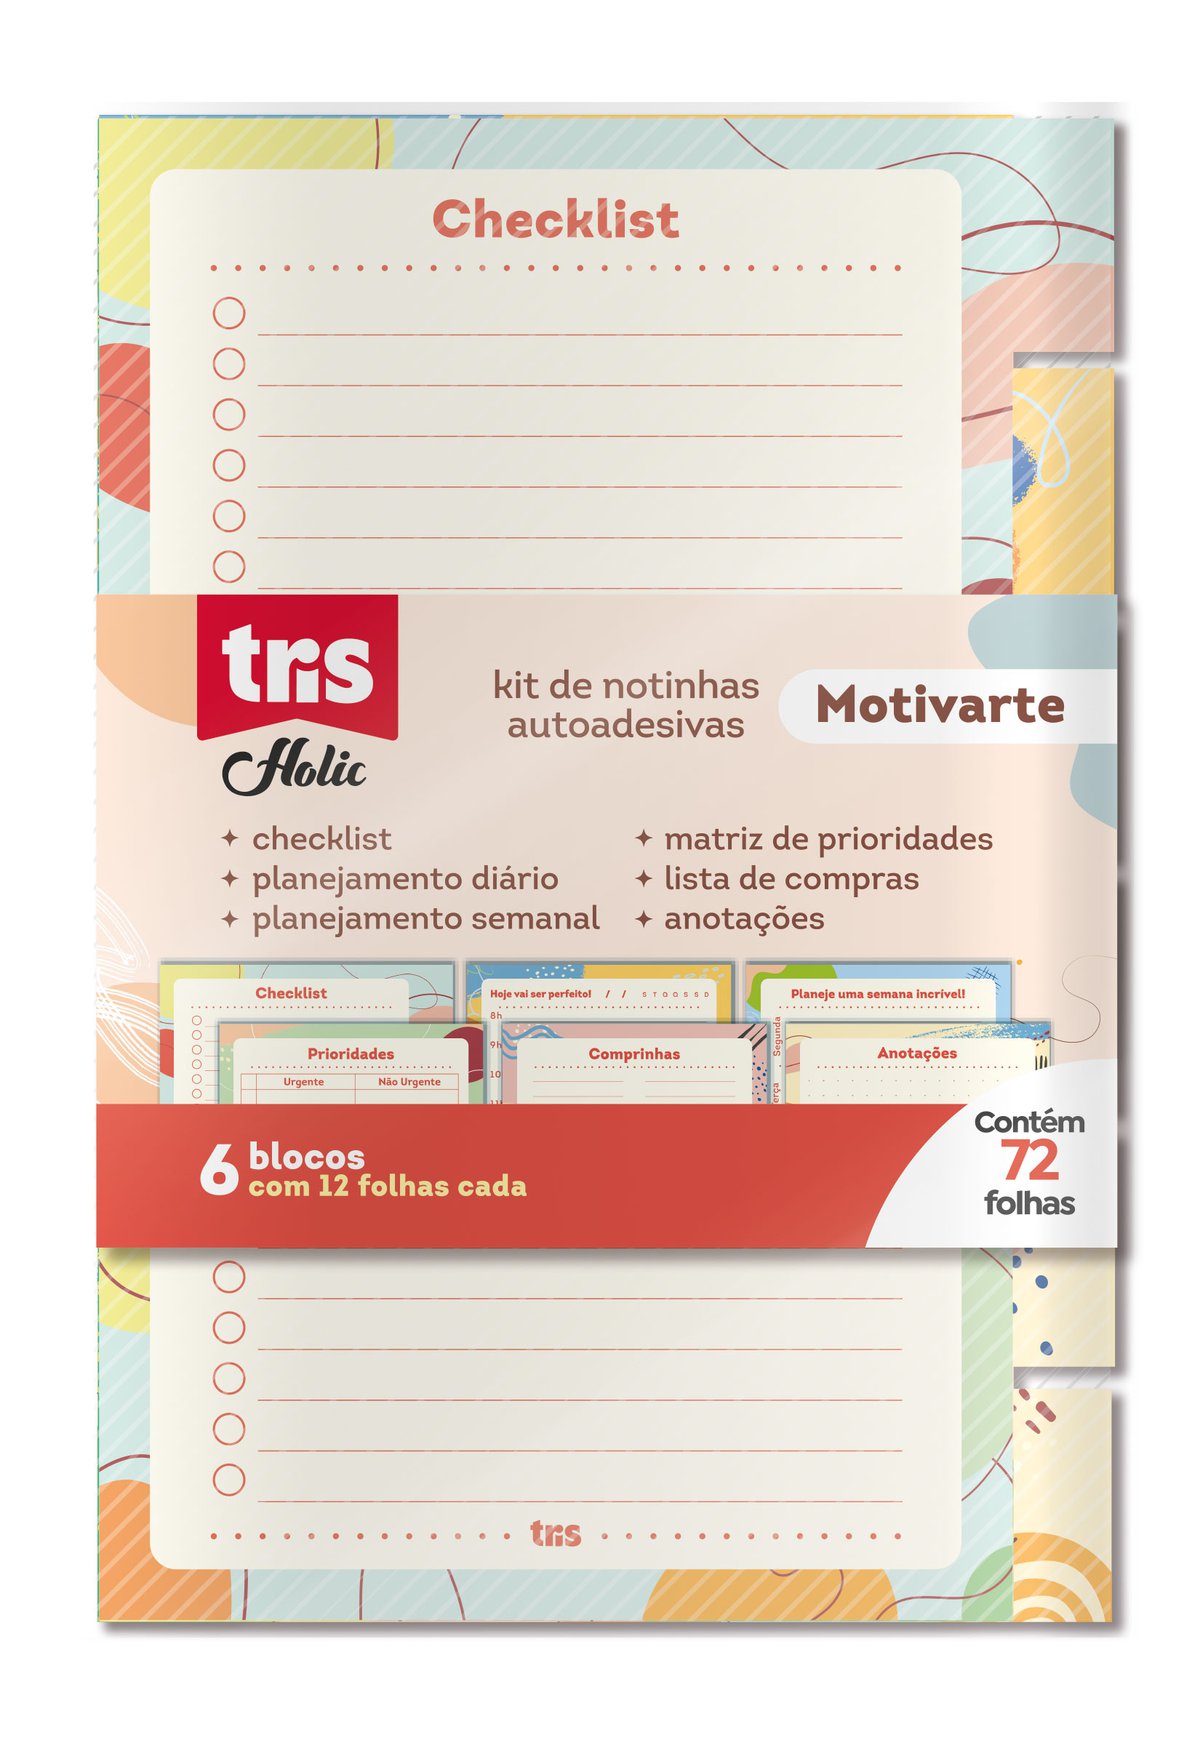 Kit de Notinhas Autoadesivas - Tris - Holic Motivarte 72 fls.